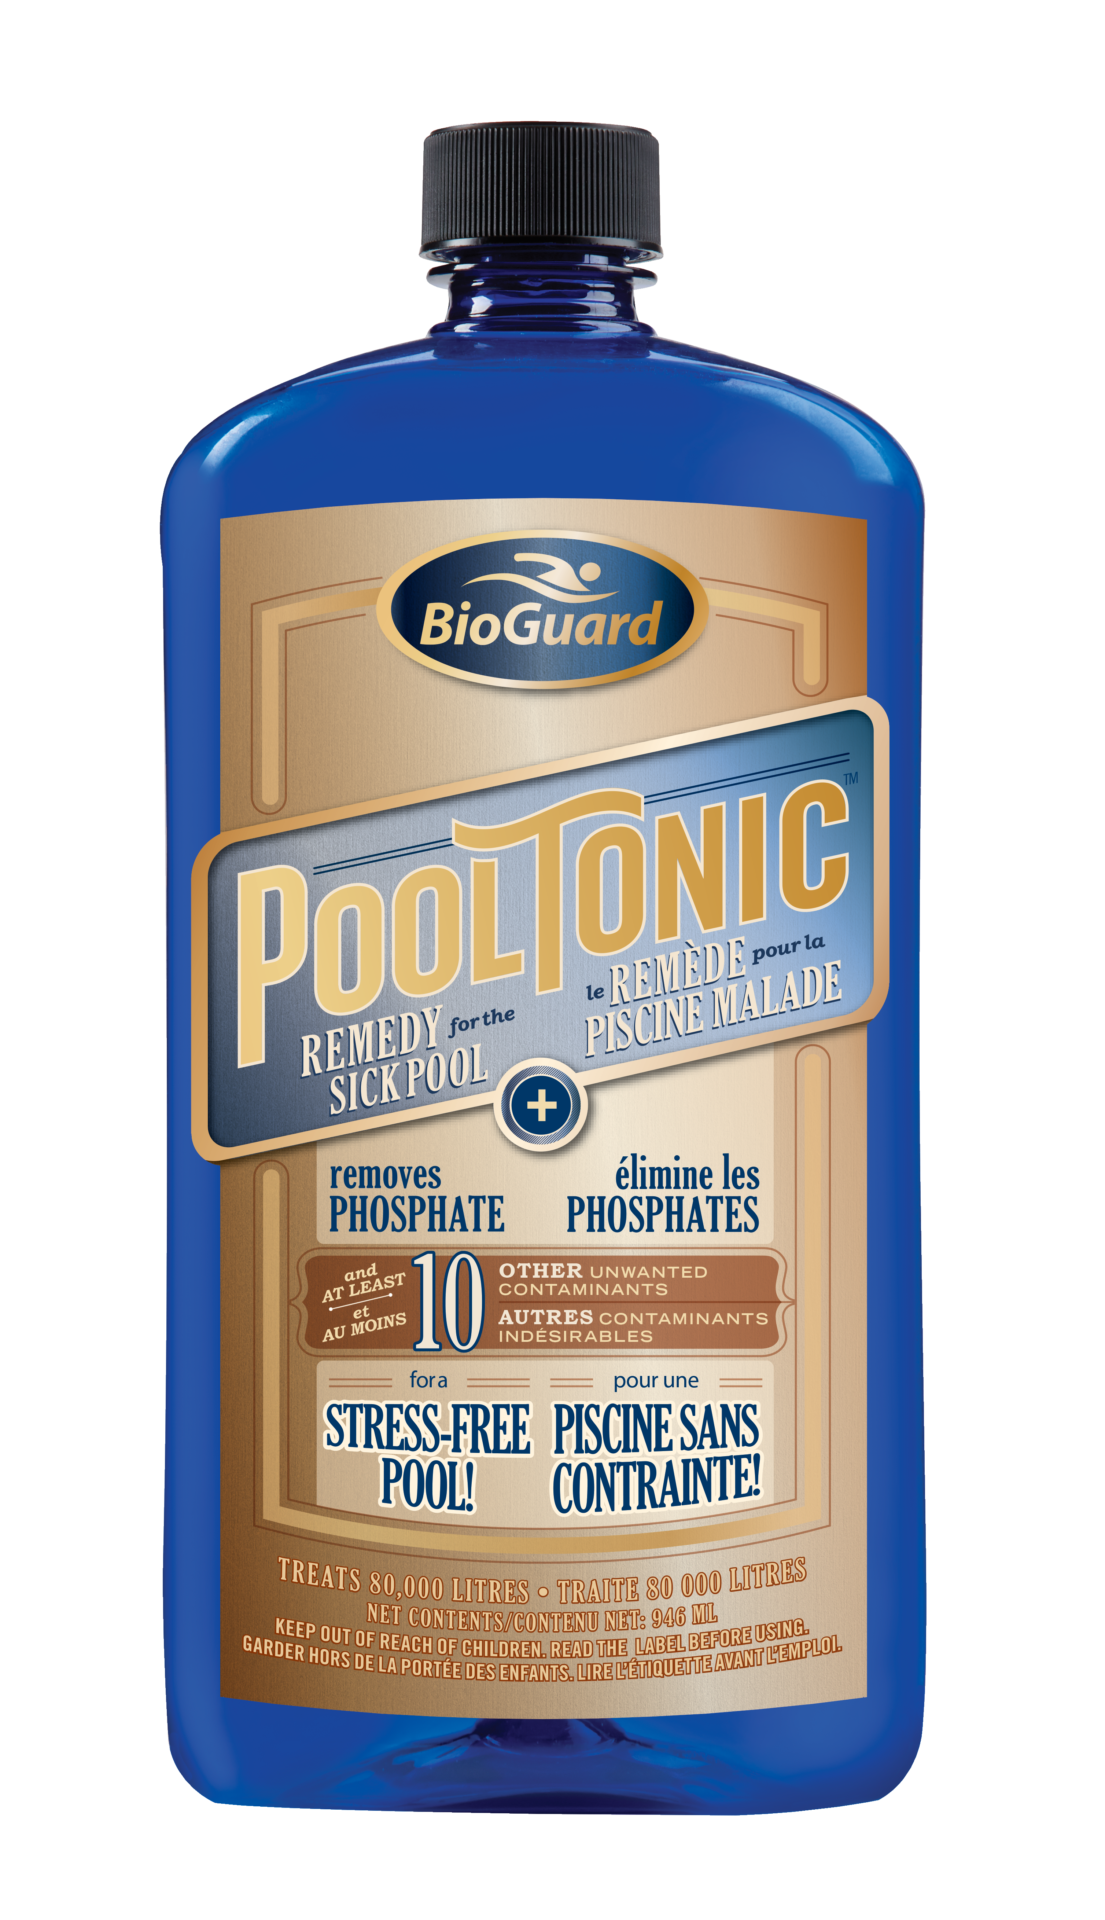 BioGuard Pool Tonic 946ml 1 - POOL TONIC - 946ml